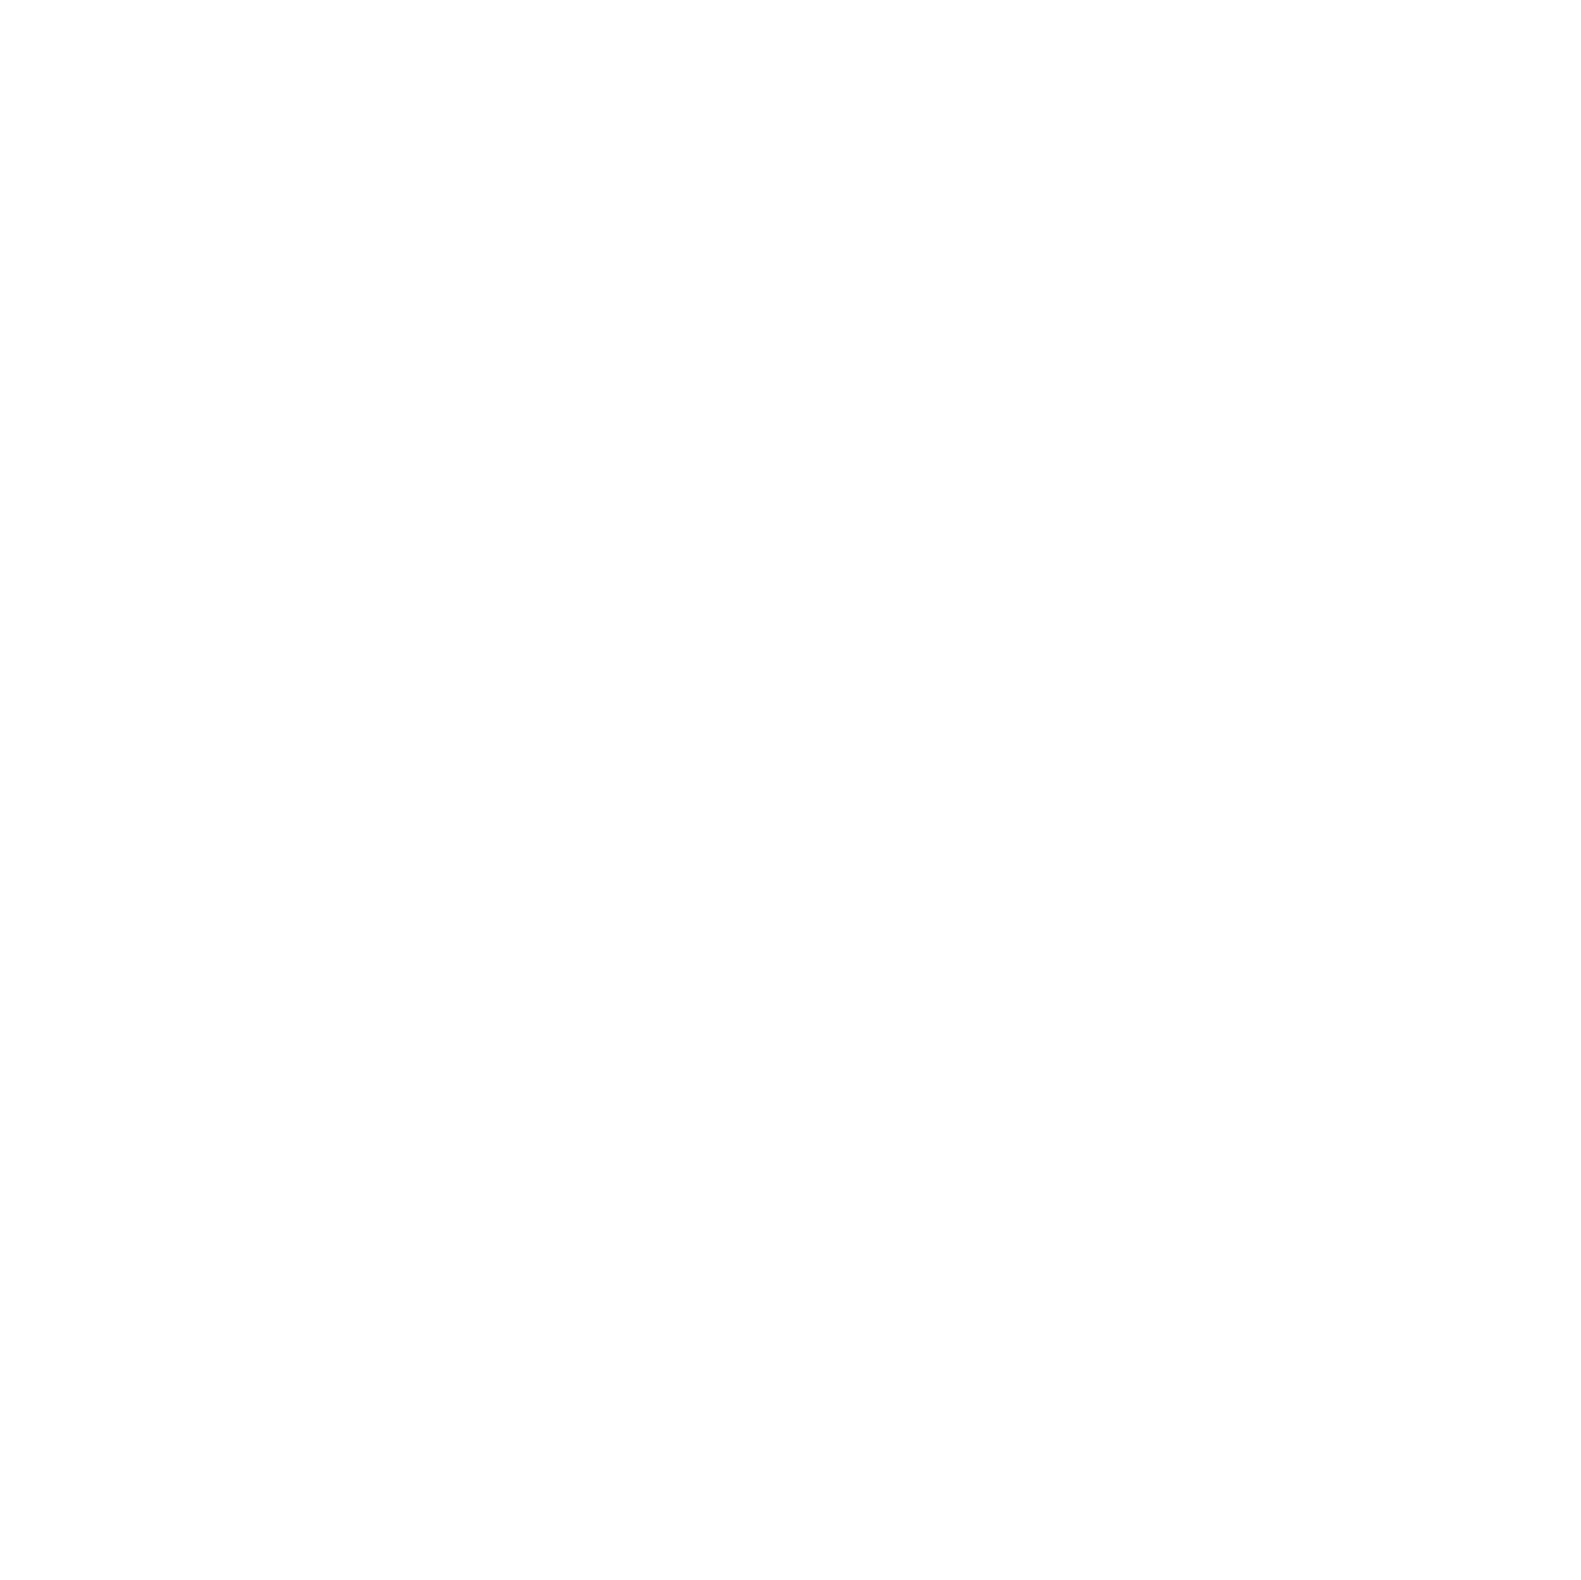 Symrise logo for dark backgrounds (transparent PNG)